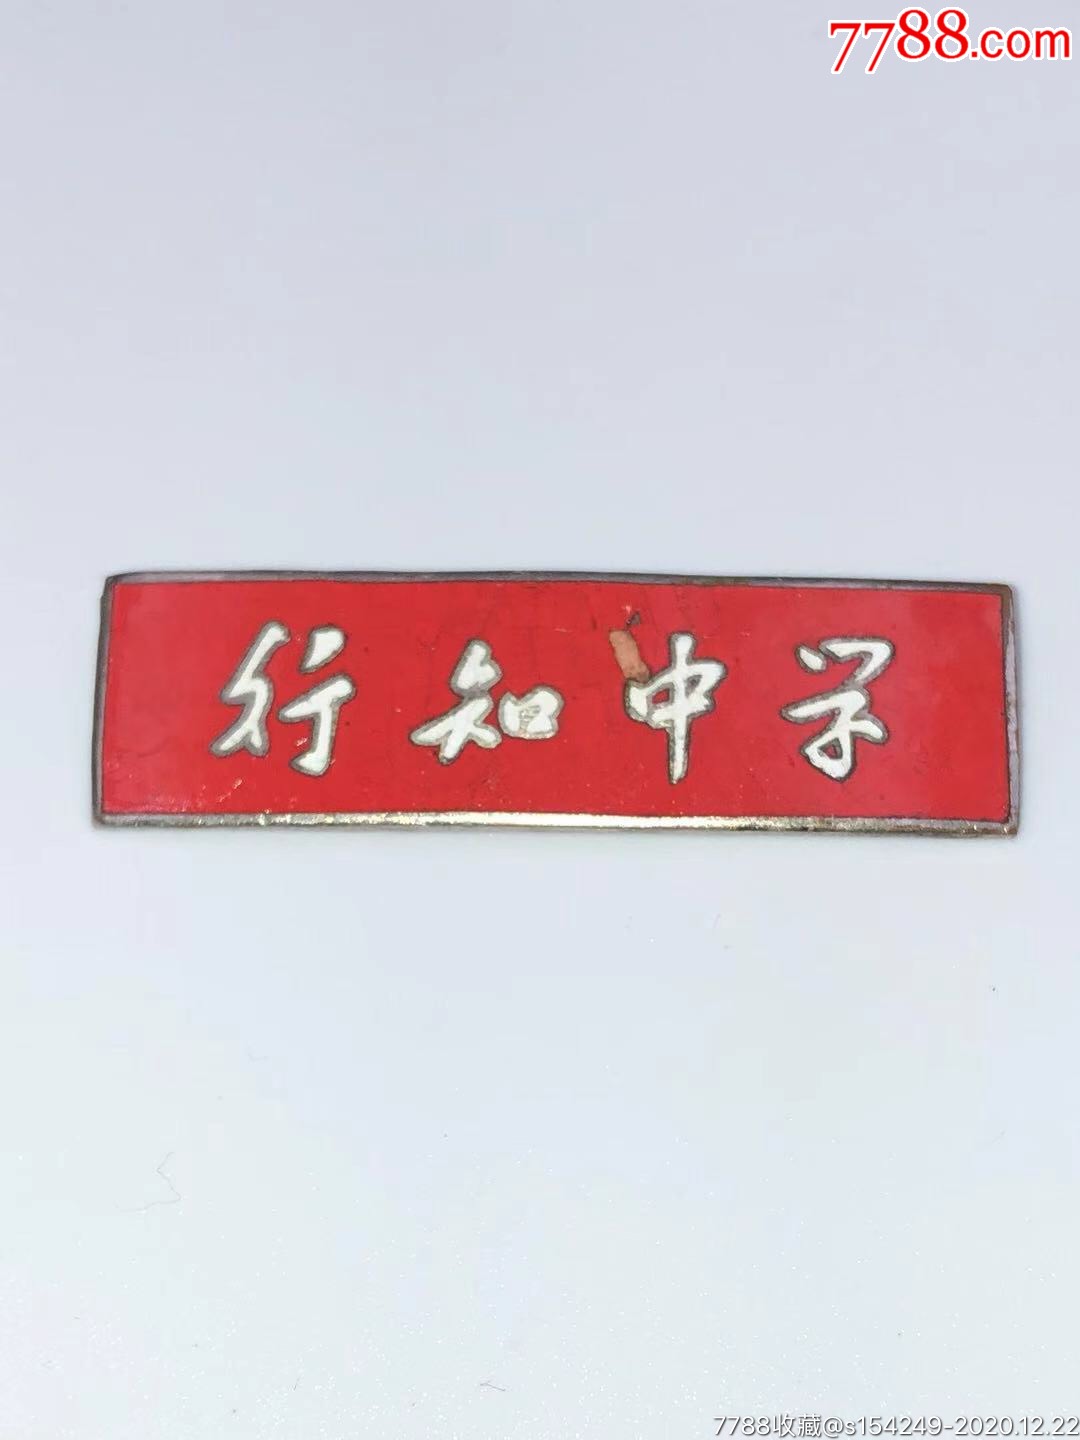 上海行知中学校徽图片